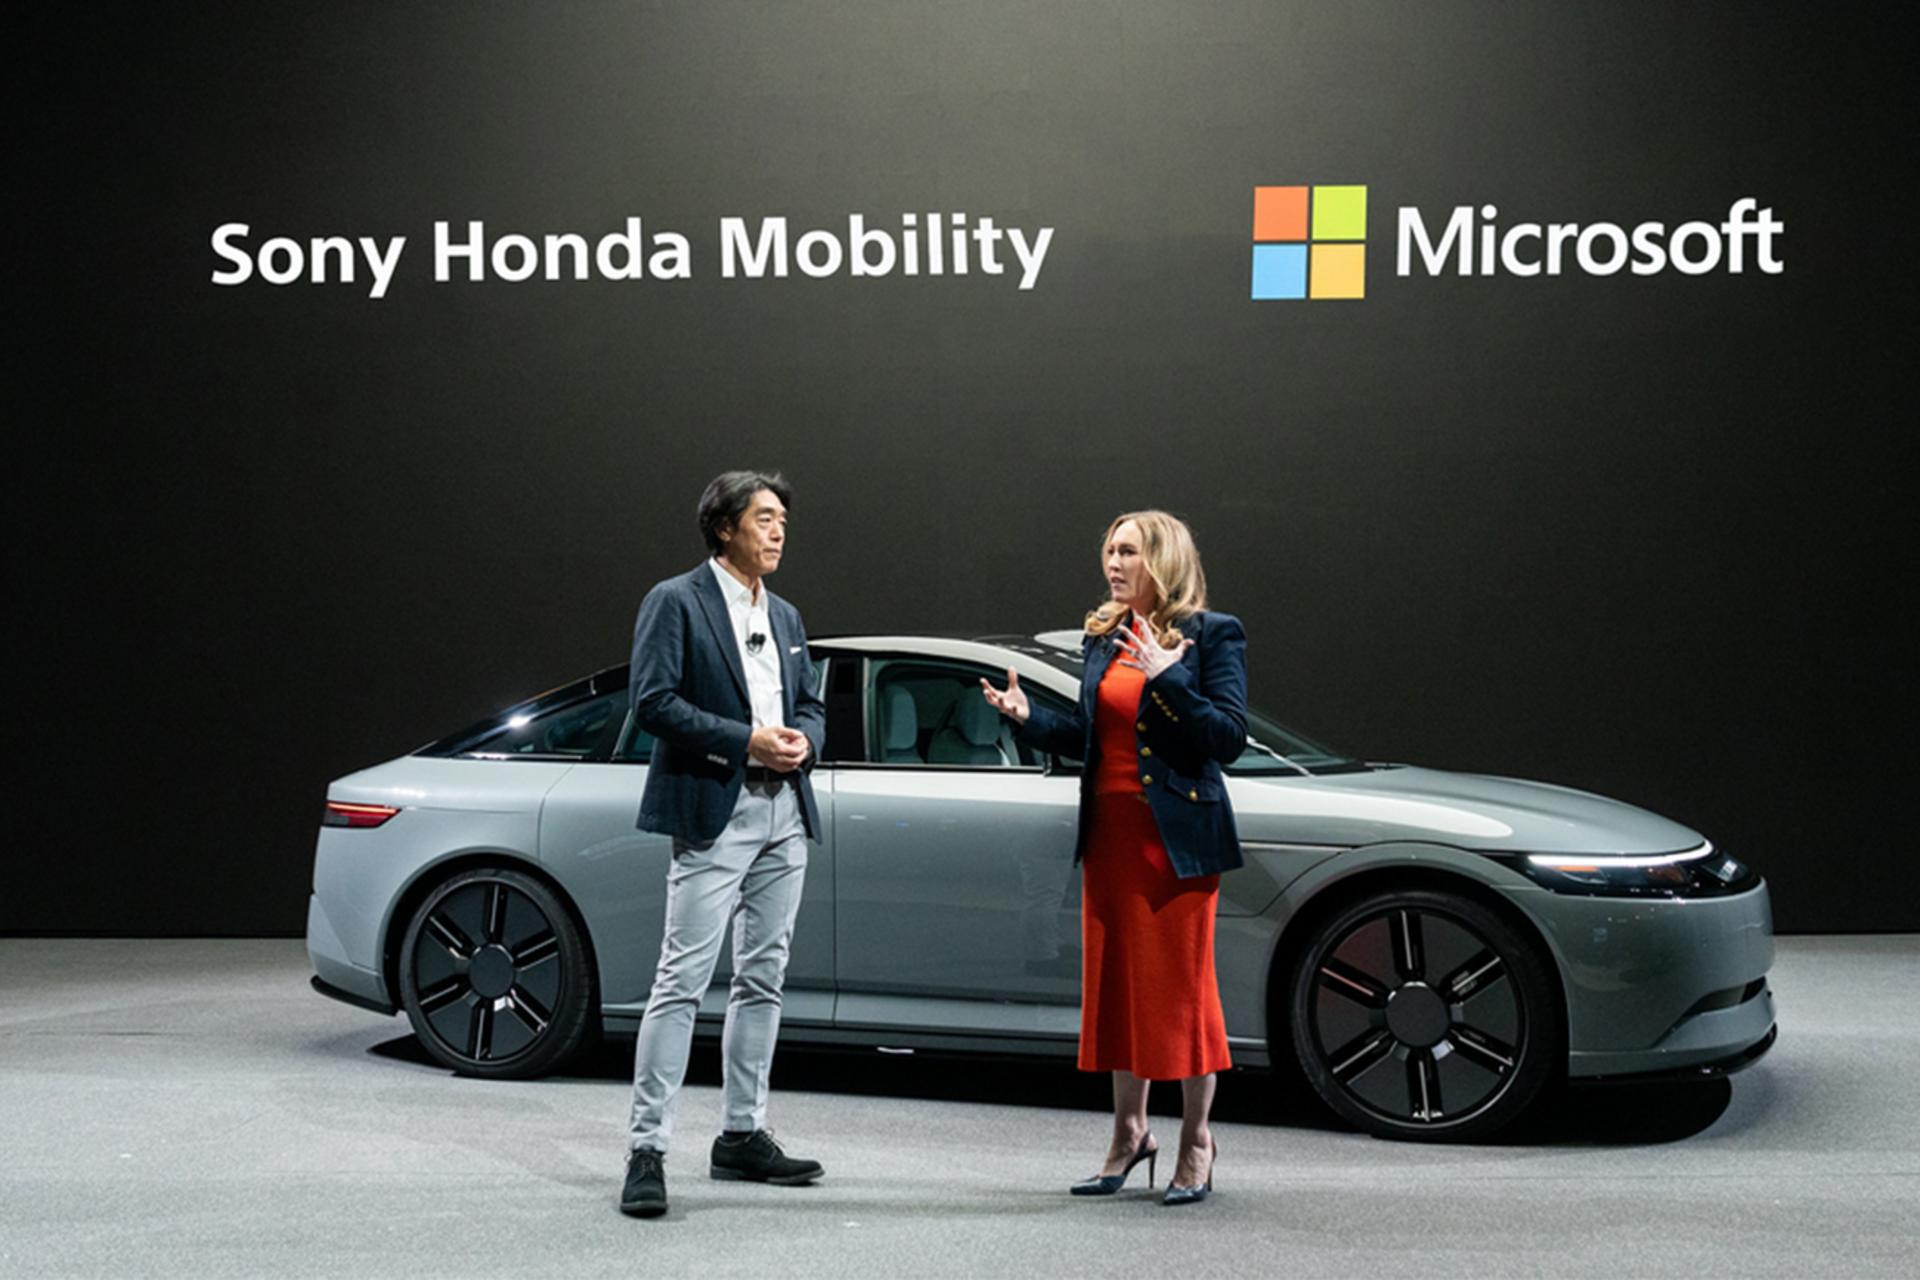 جسیکا هاک از مایکروسافت در حال حرف زدن در کنار مدیرعامل سونی هوندا موبیلیتی